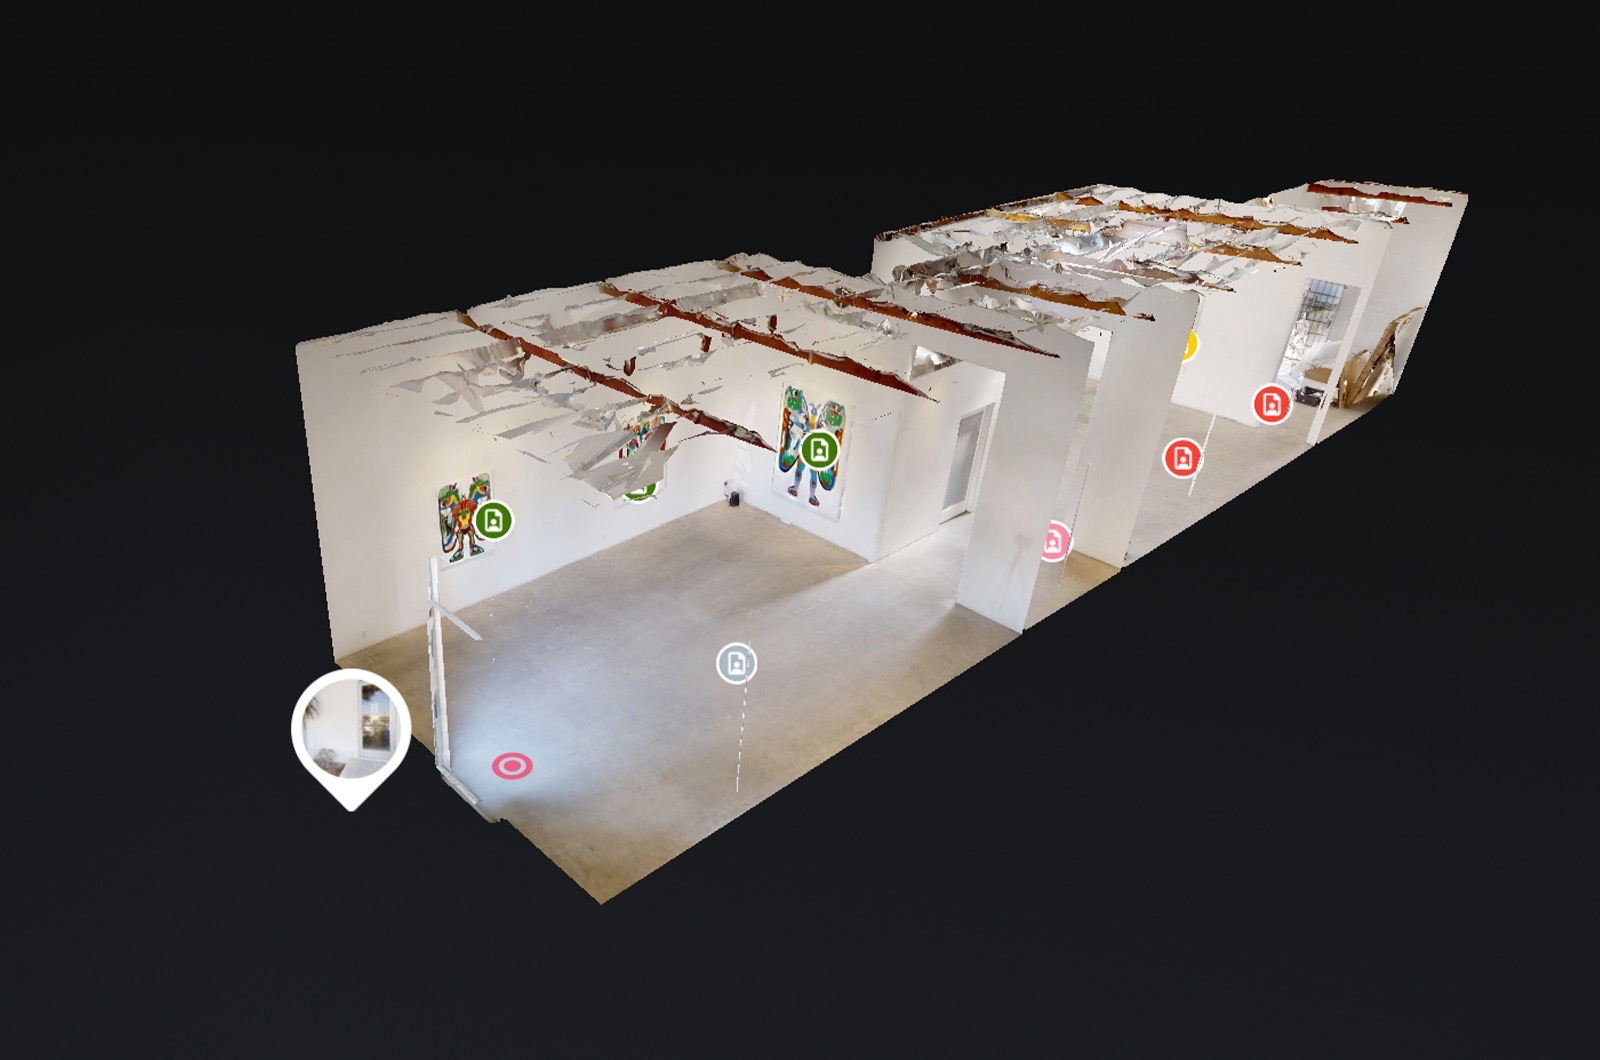 Matterport 3D Tours for Enhanced Education